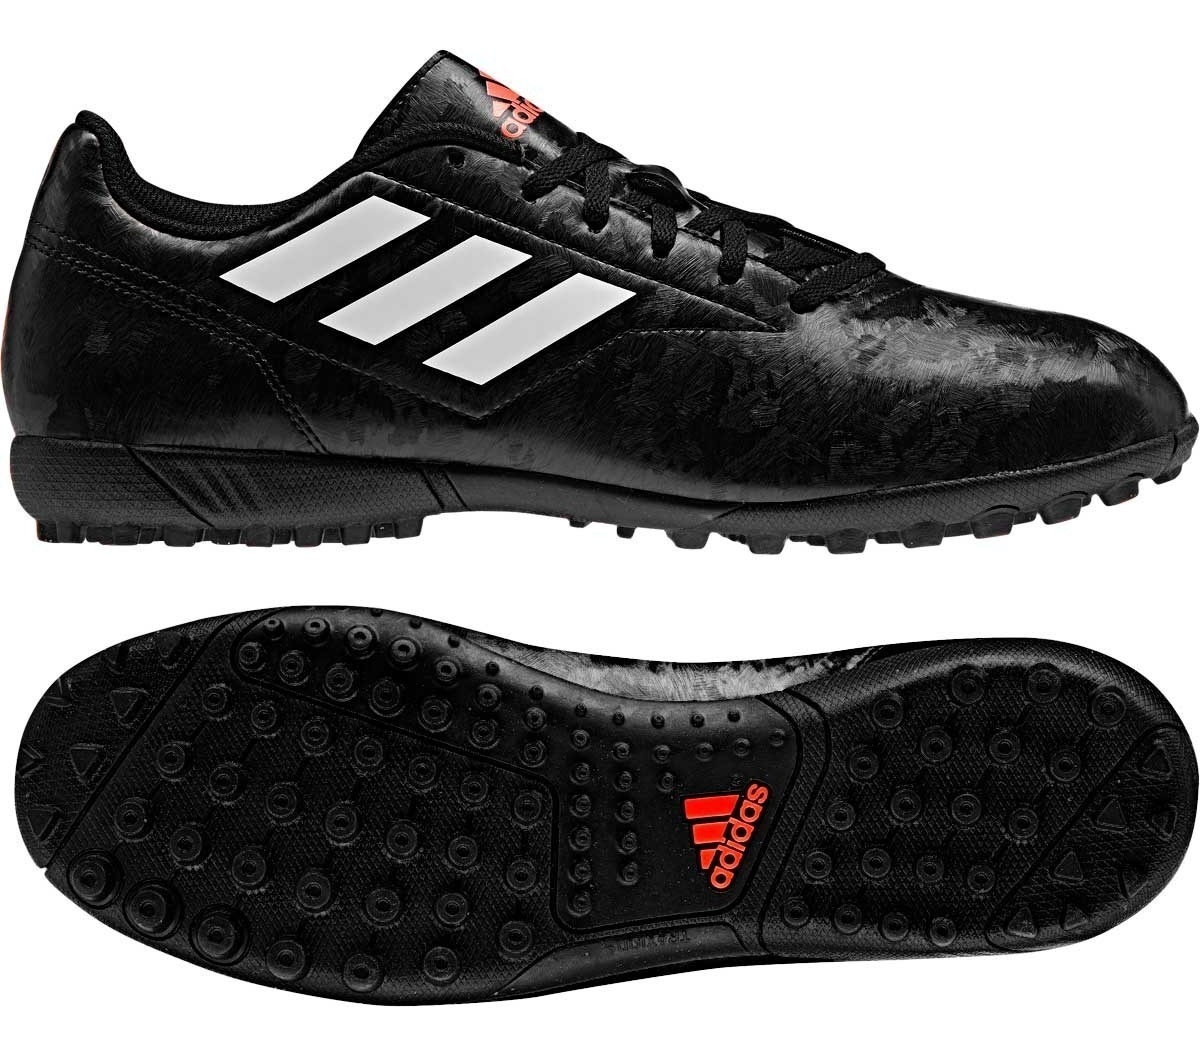 tenis adidas negros futbol - Tienda Online de Zapatos, Ropa y Complementos  de marca